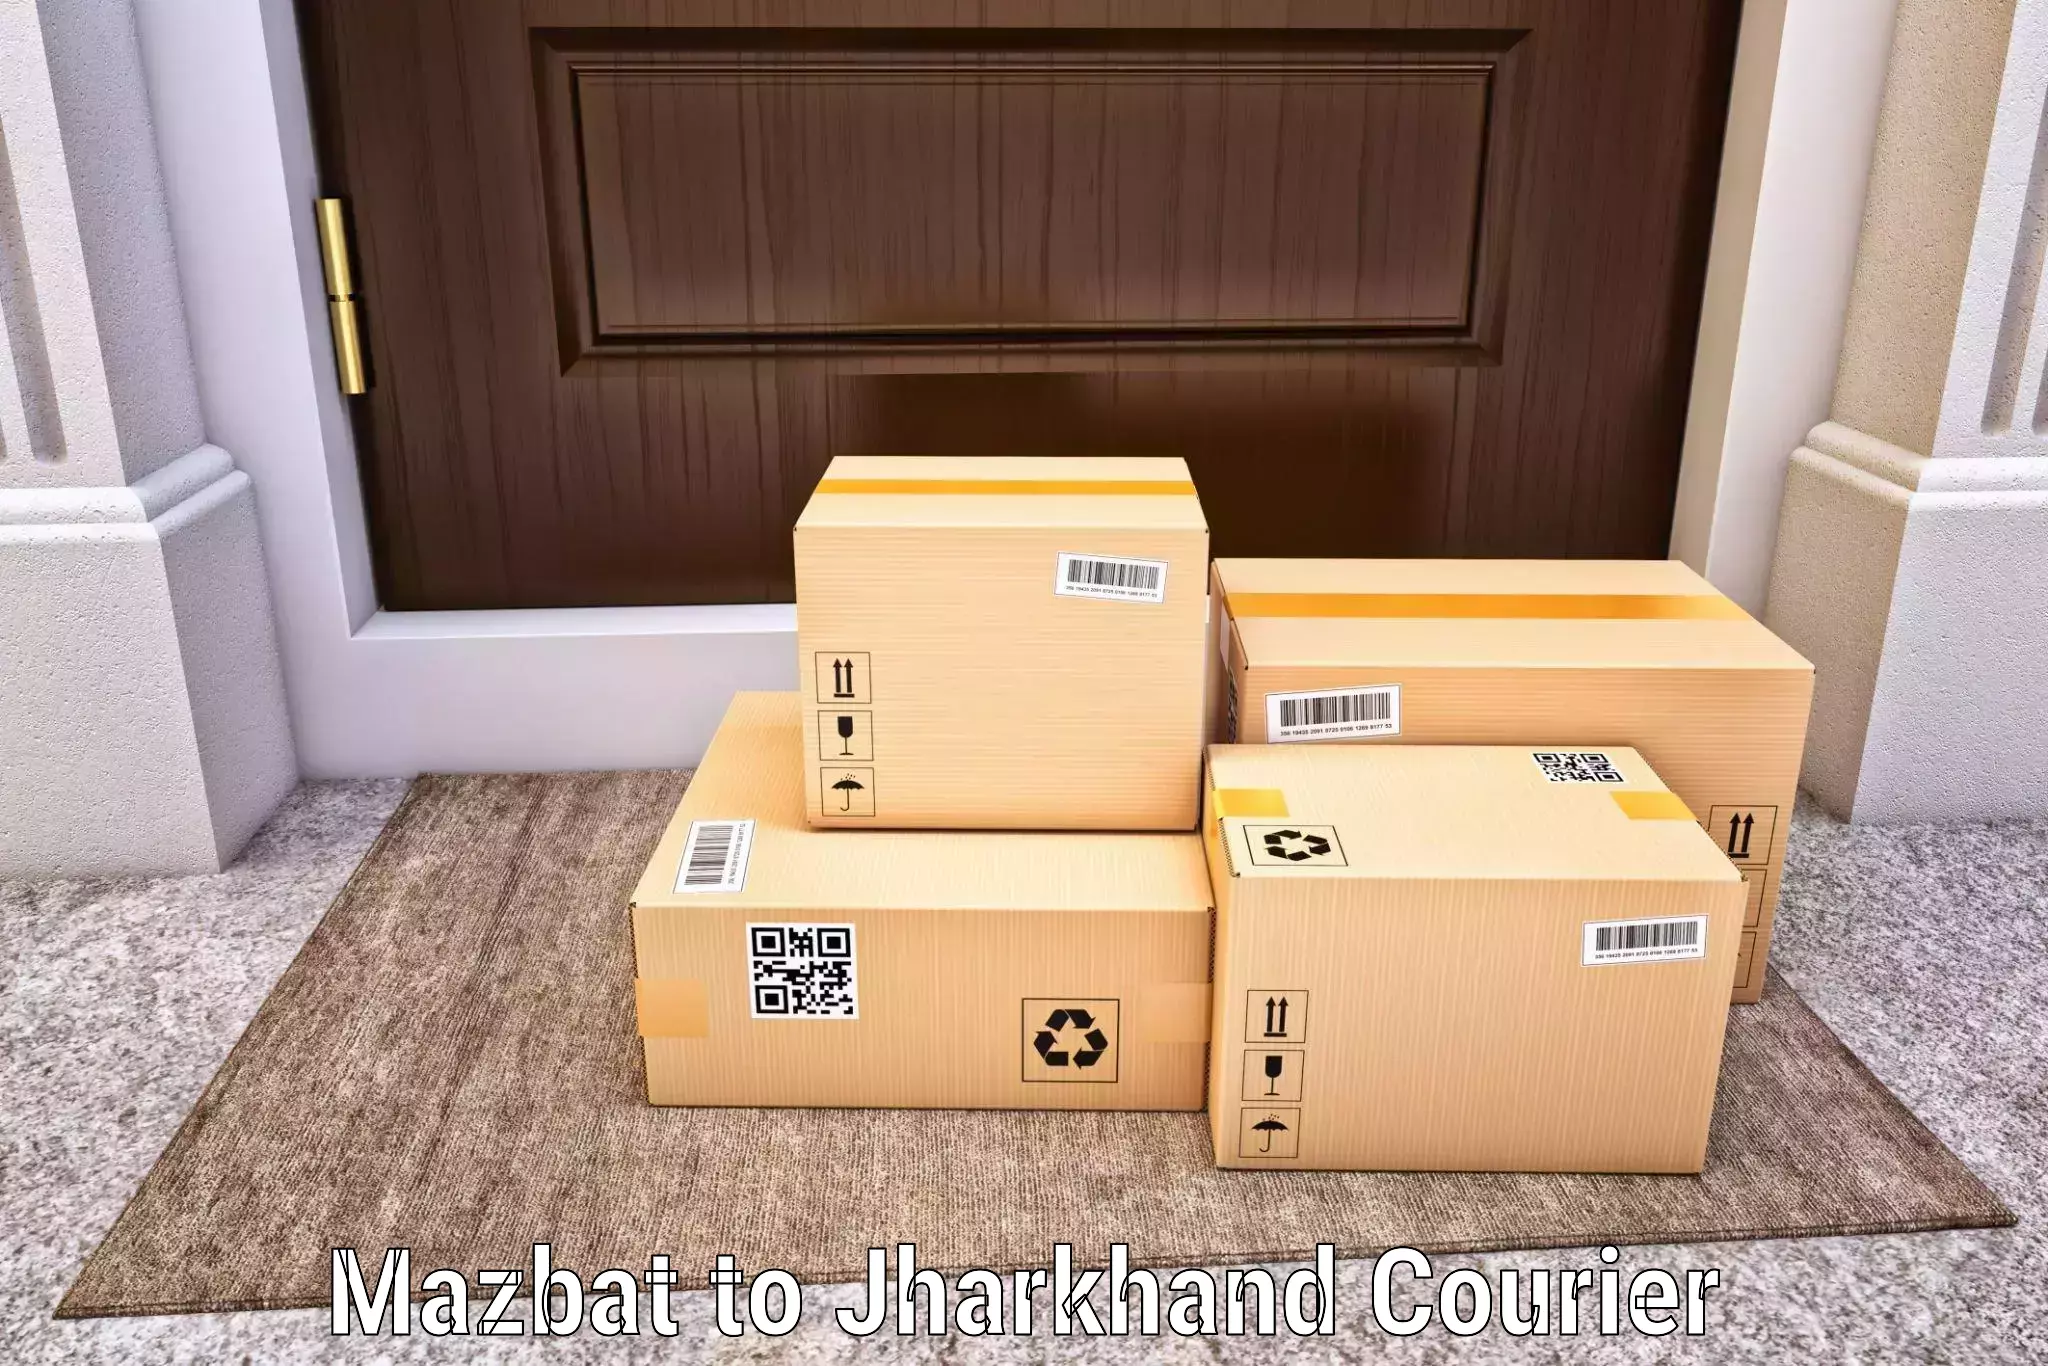 Package forwarding in Mazbat to Bara Boarijor